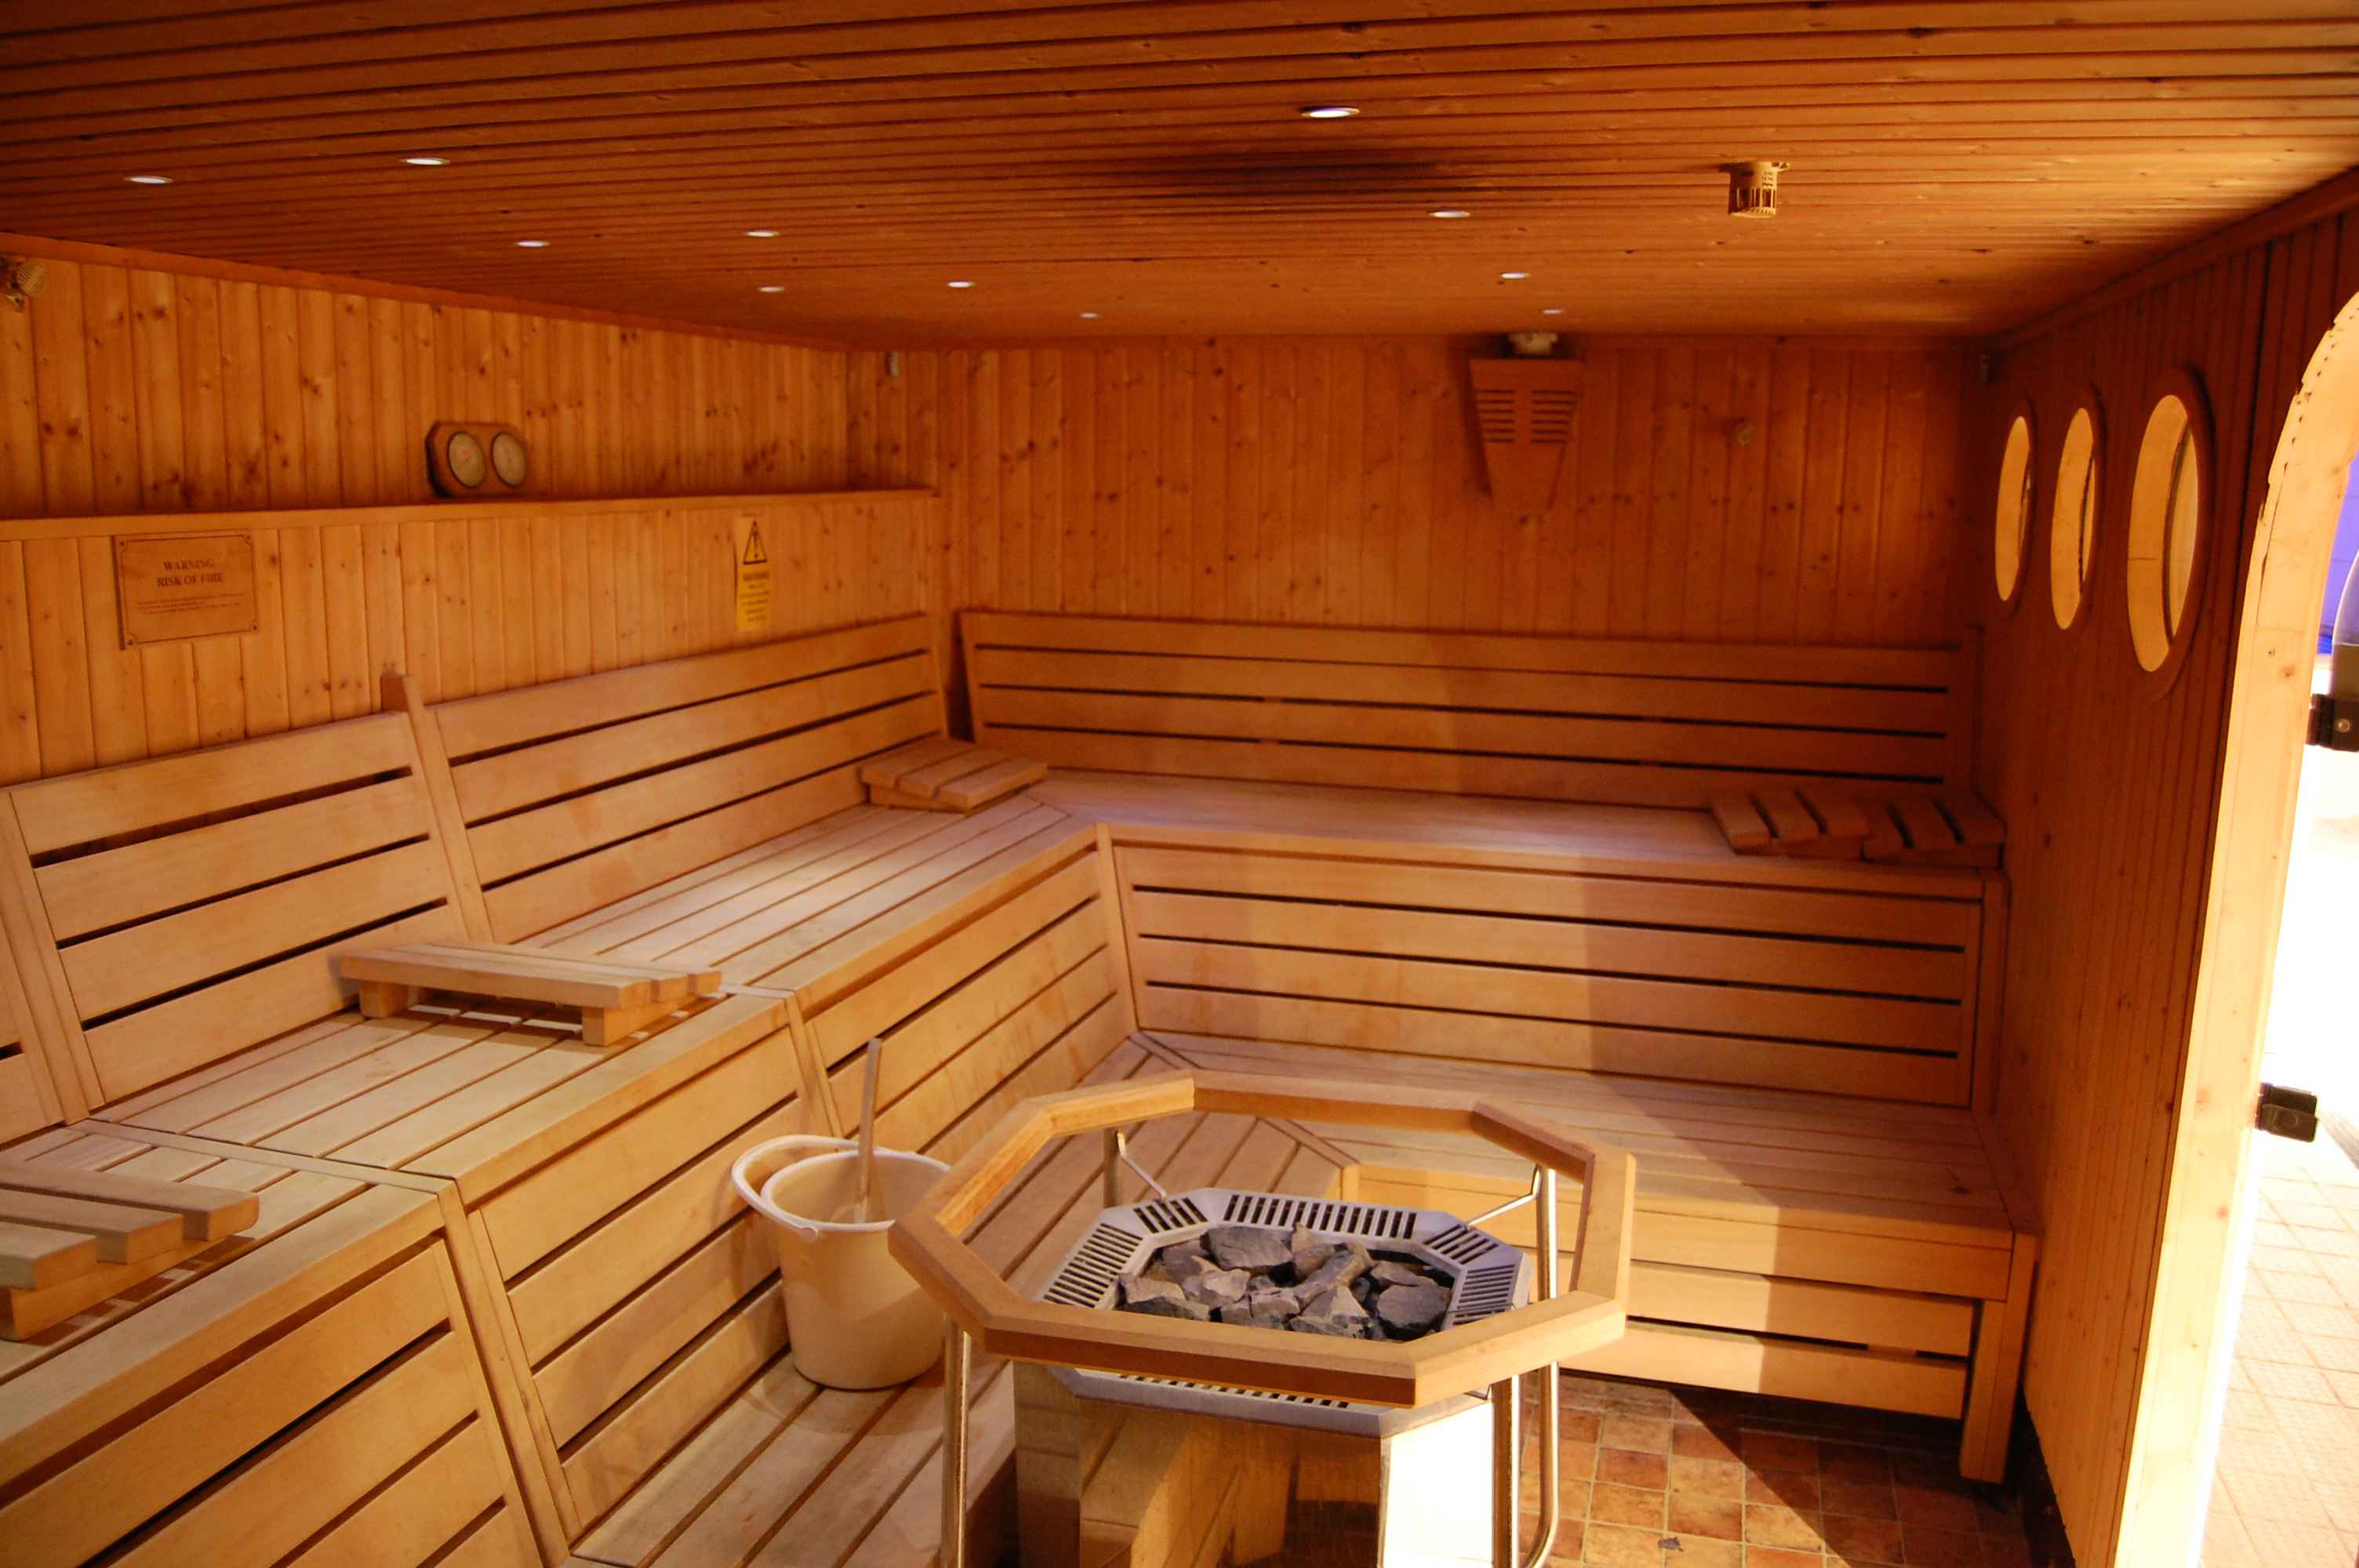 Sauna redukton numrin e spermatozoideve tek meshkujt